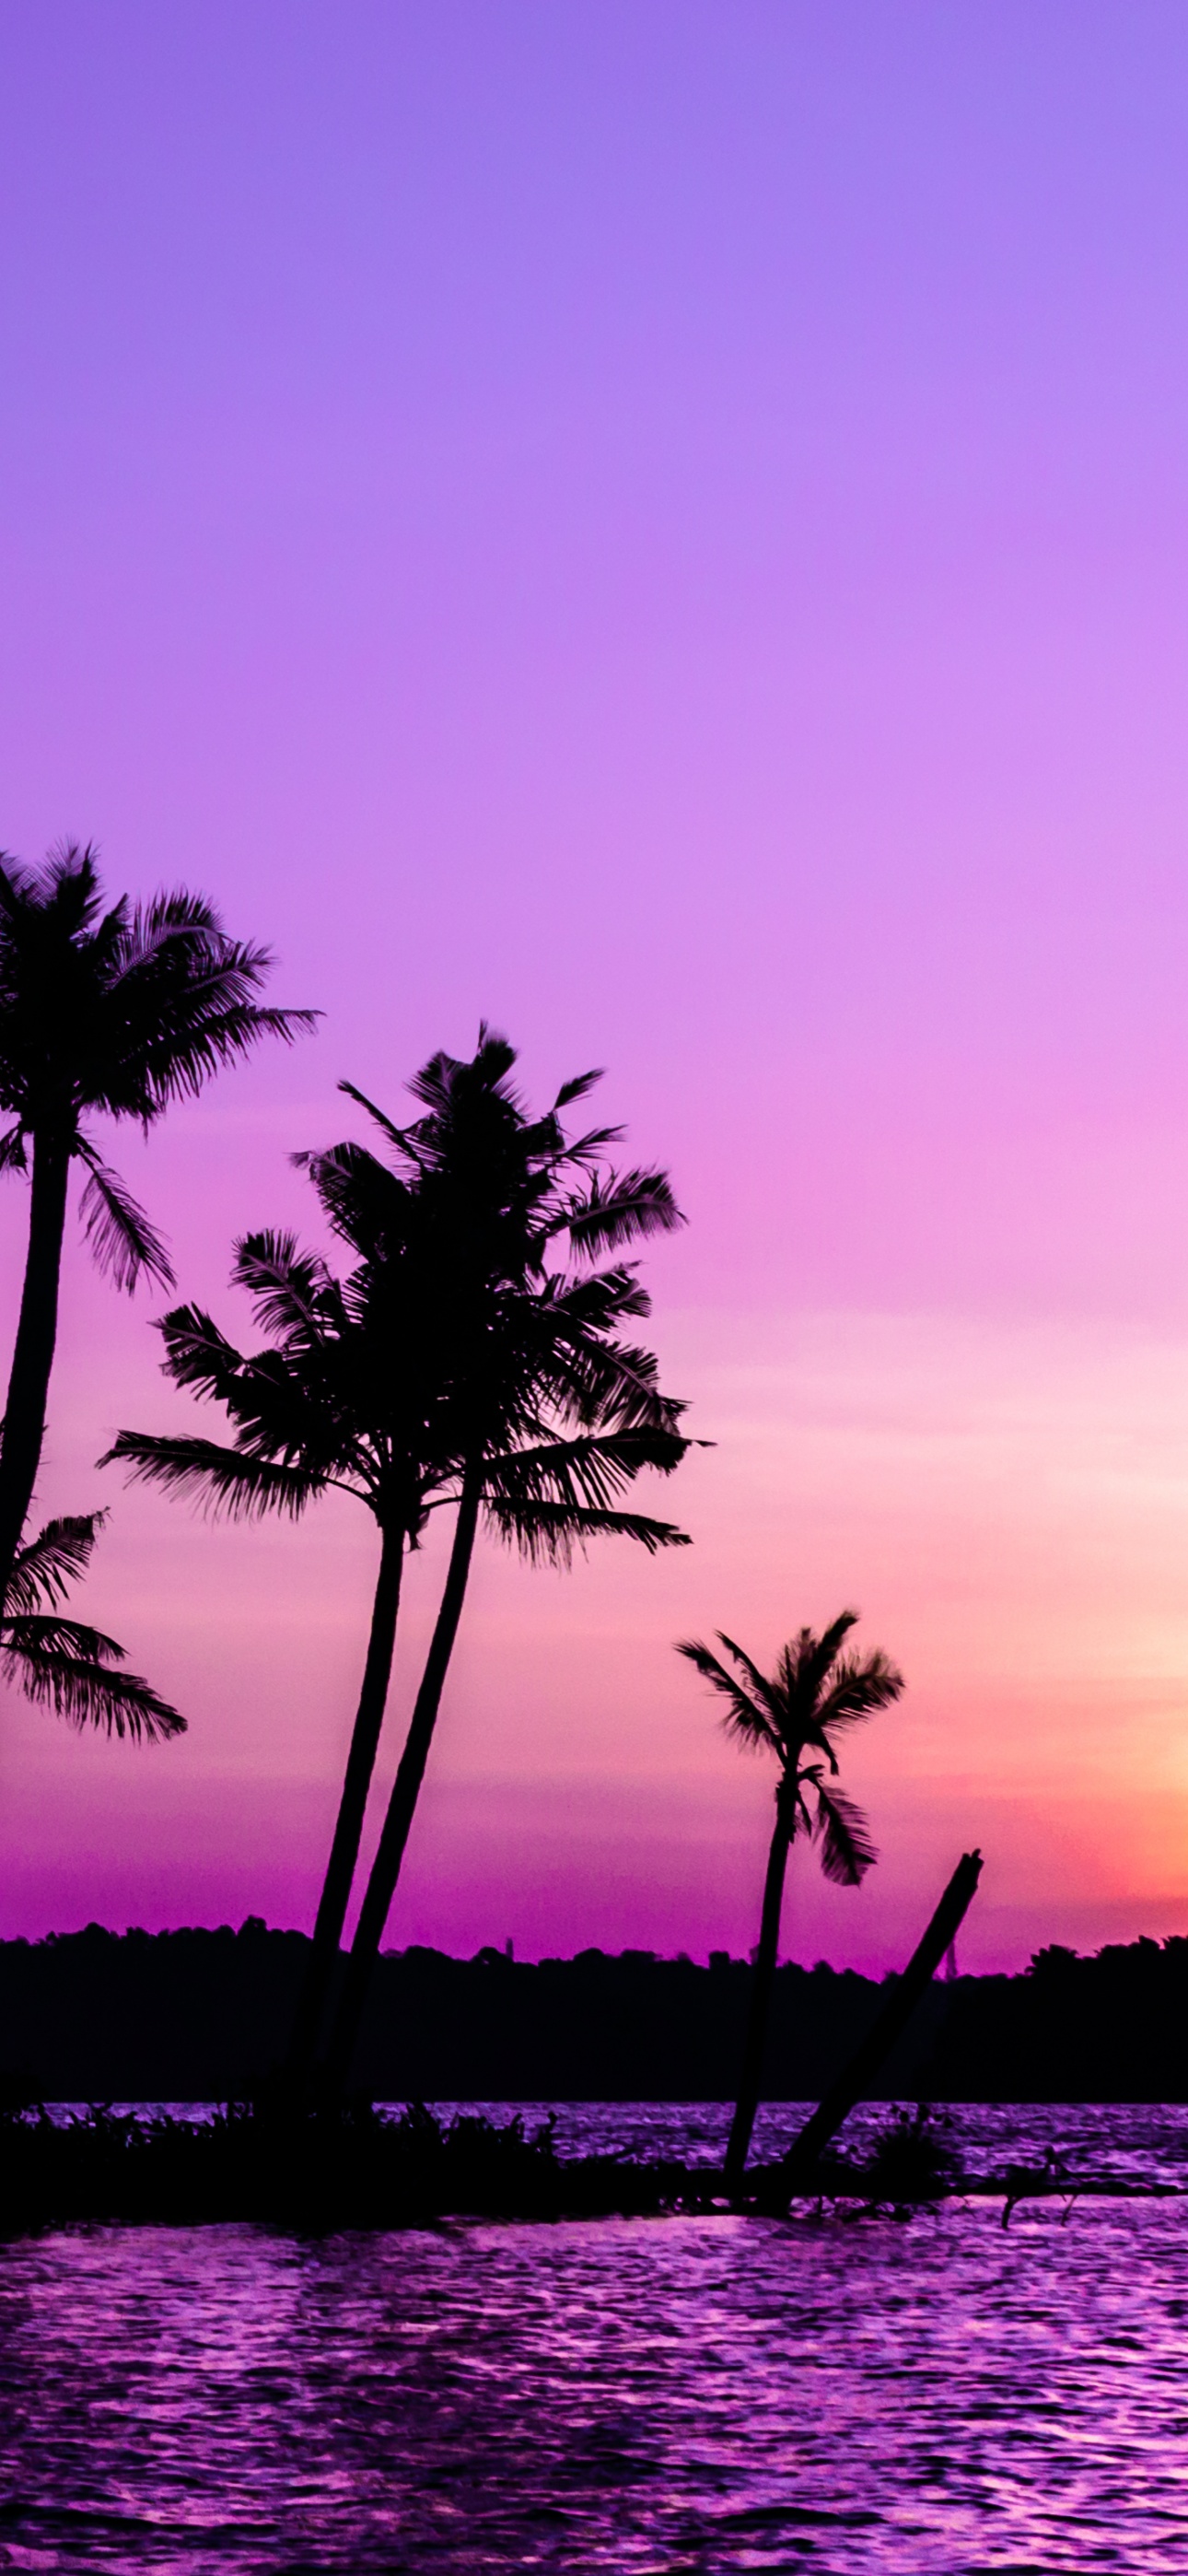 Purple Sunrise Wallpaper 4K, Clear sky, Palm trees, Scenery